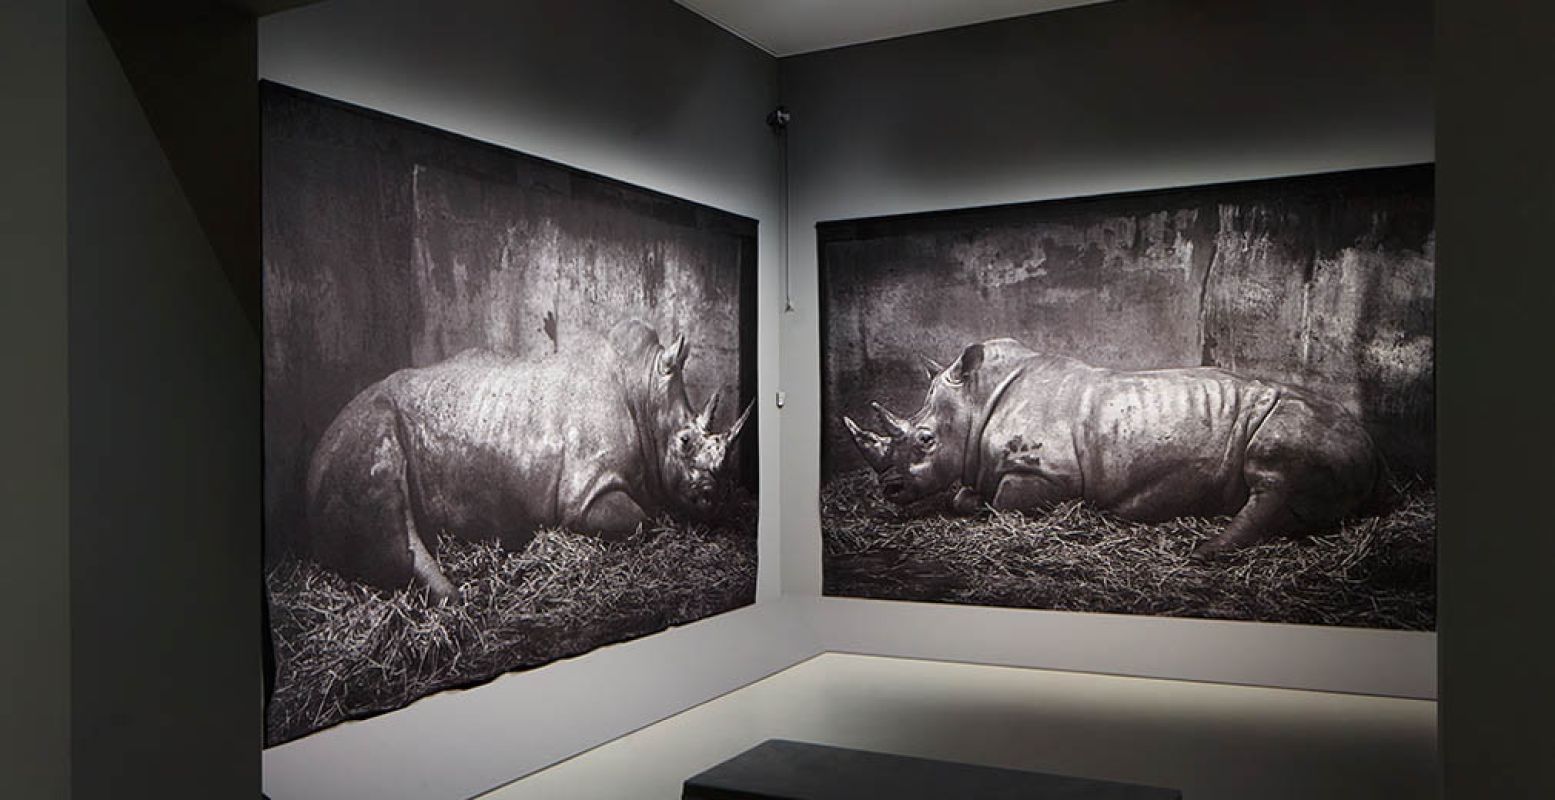 Bezoek het Centraal Museum en bewonder 'Zoo' van Craigie Horsfield, een van zijn meest indrukwekkende kunstwerken.